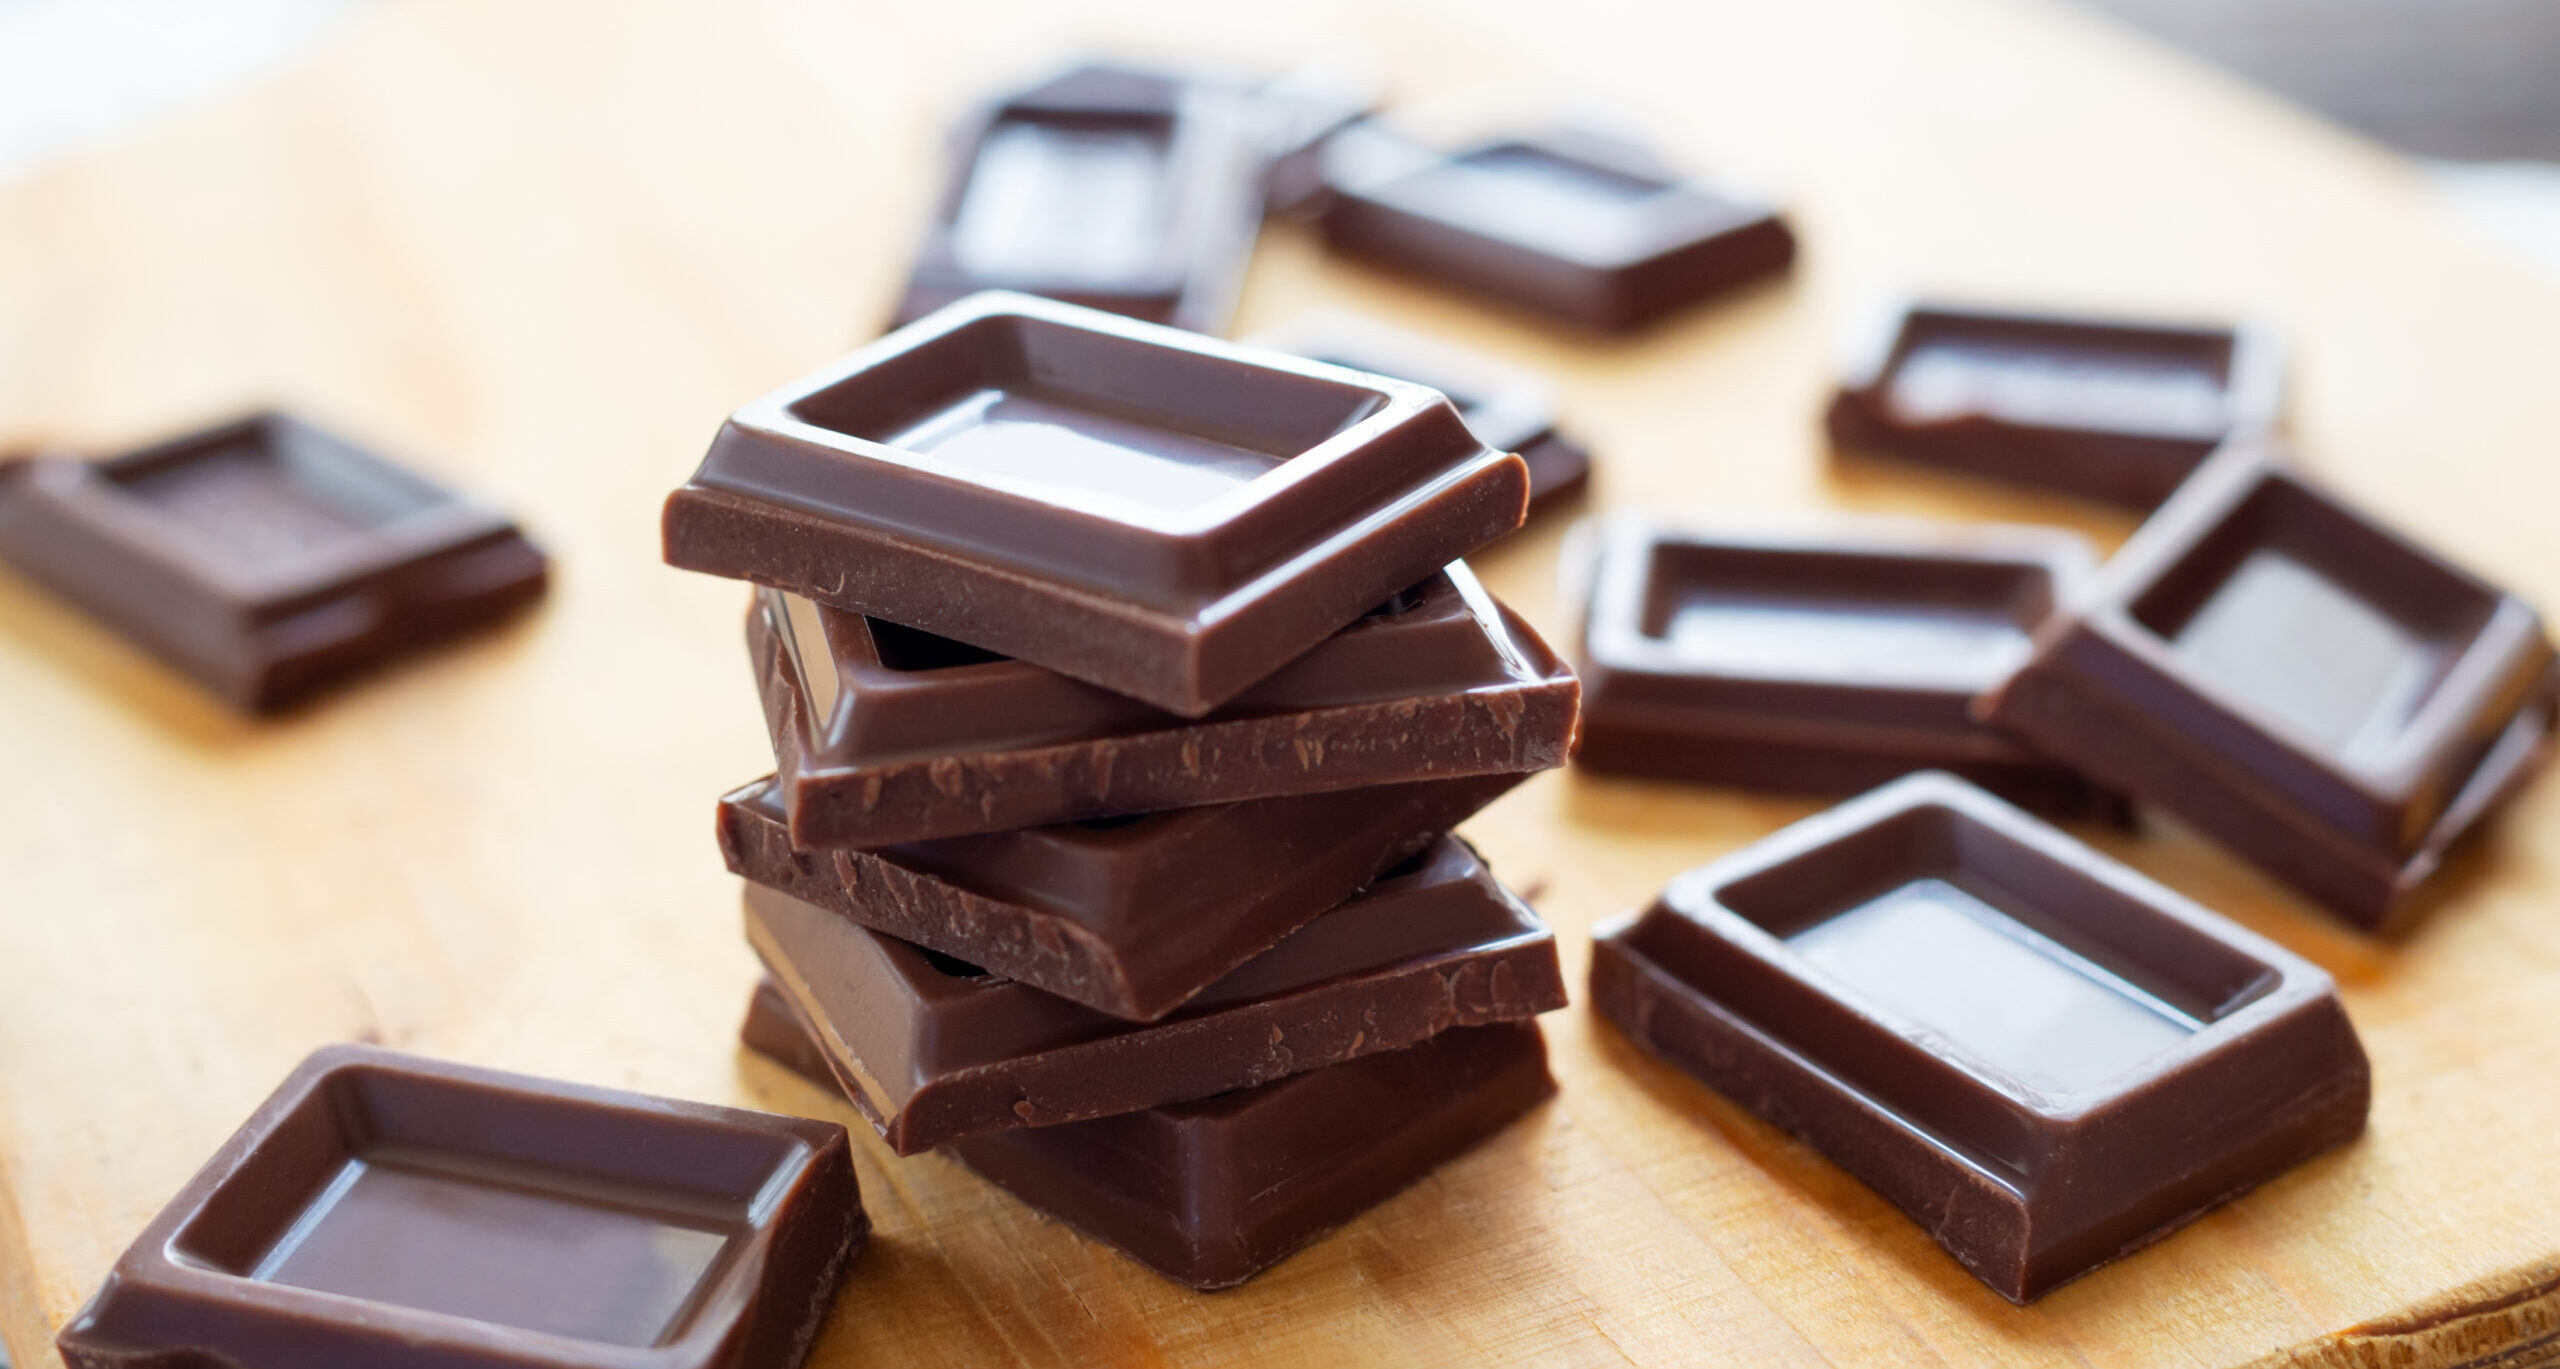 Chocolate com insulina poderá substituir injeções no tratamento do diabetes